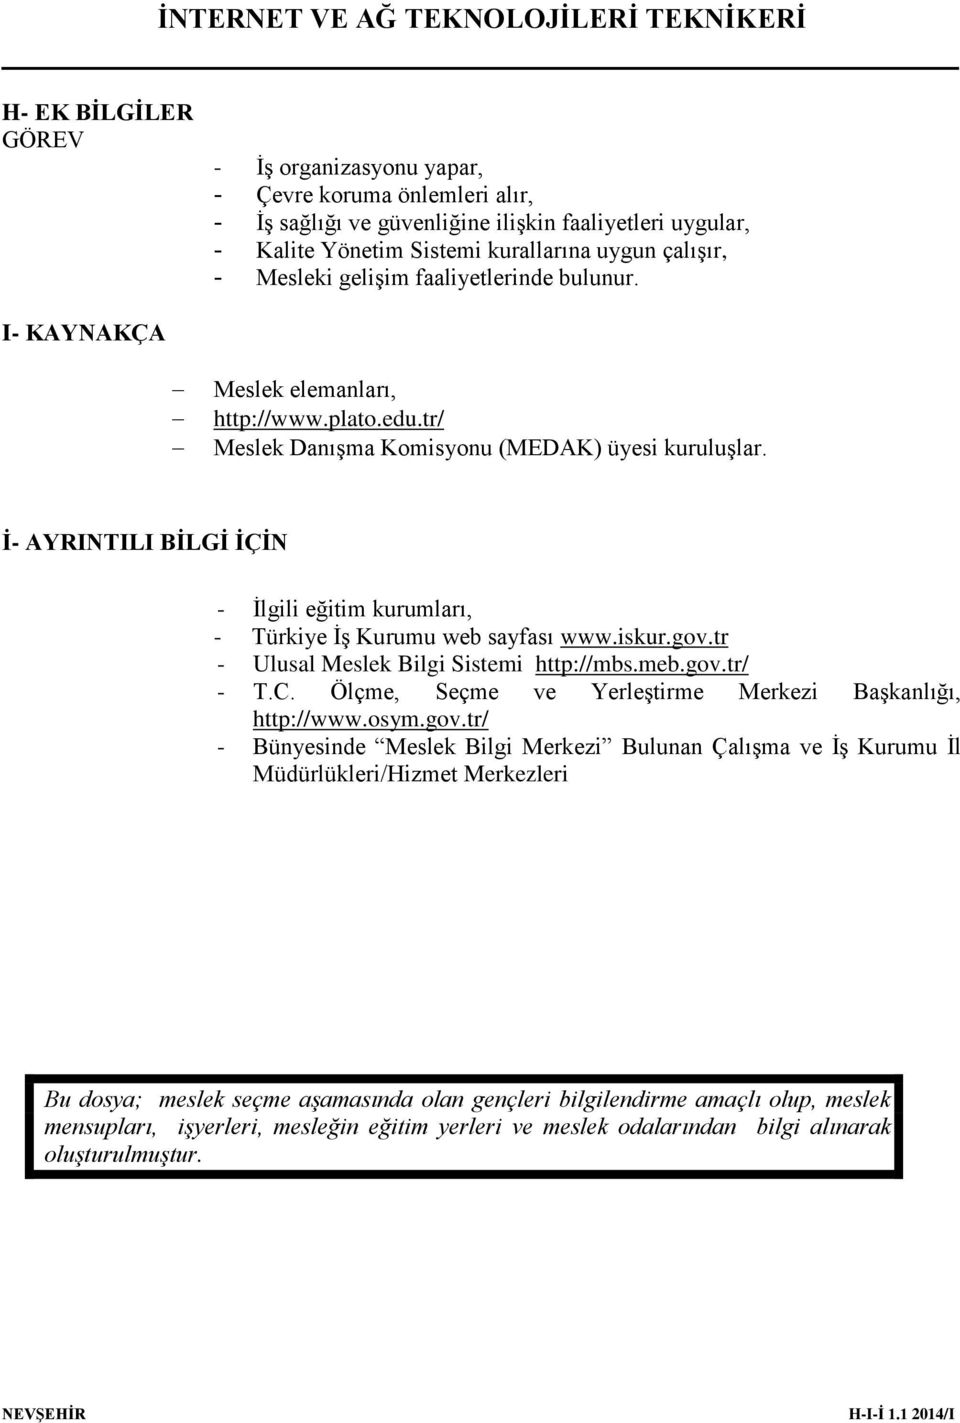 İ- AYRINTILI BİLGİ İÇİN - İlgili eğitim kurumları, - Türkiye İş Kurumu web sayfası www.iskur.gov.tr - Ulusal Meslek Bilgi Sistemi http://mbs.meb.gov.tr/ - T.C.